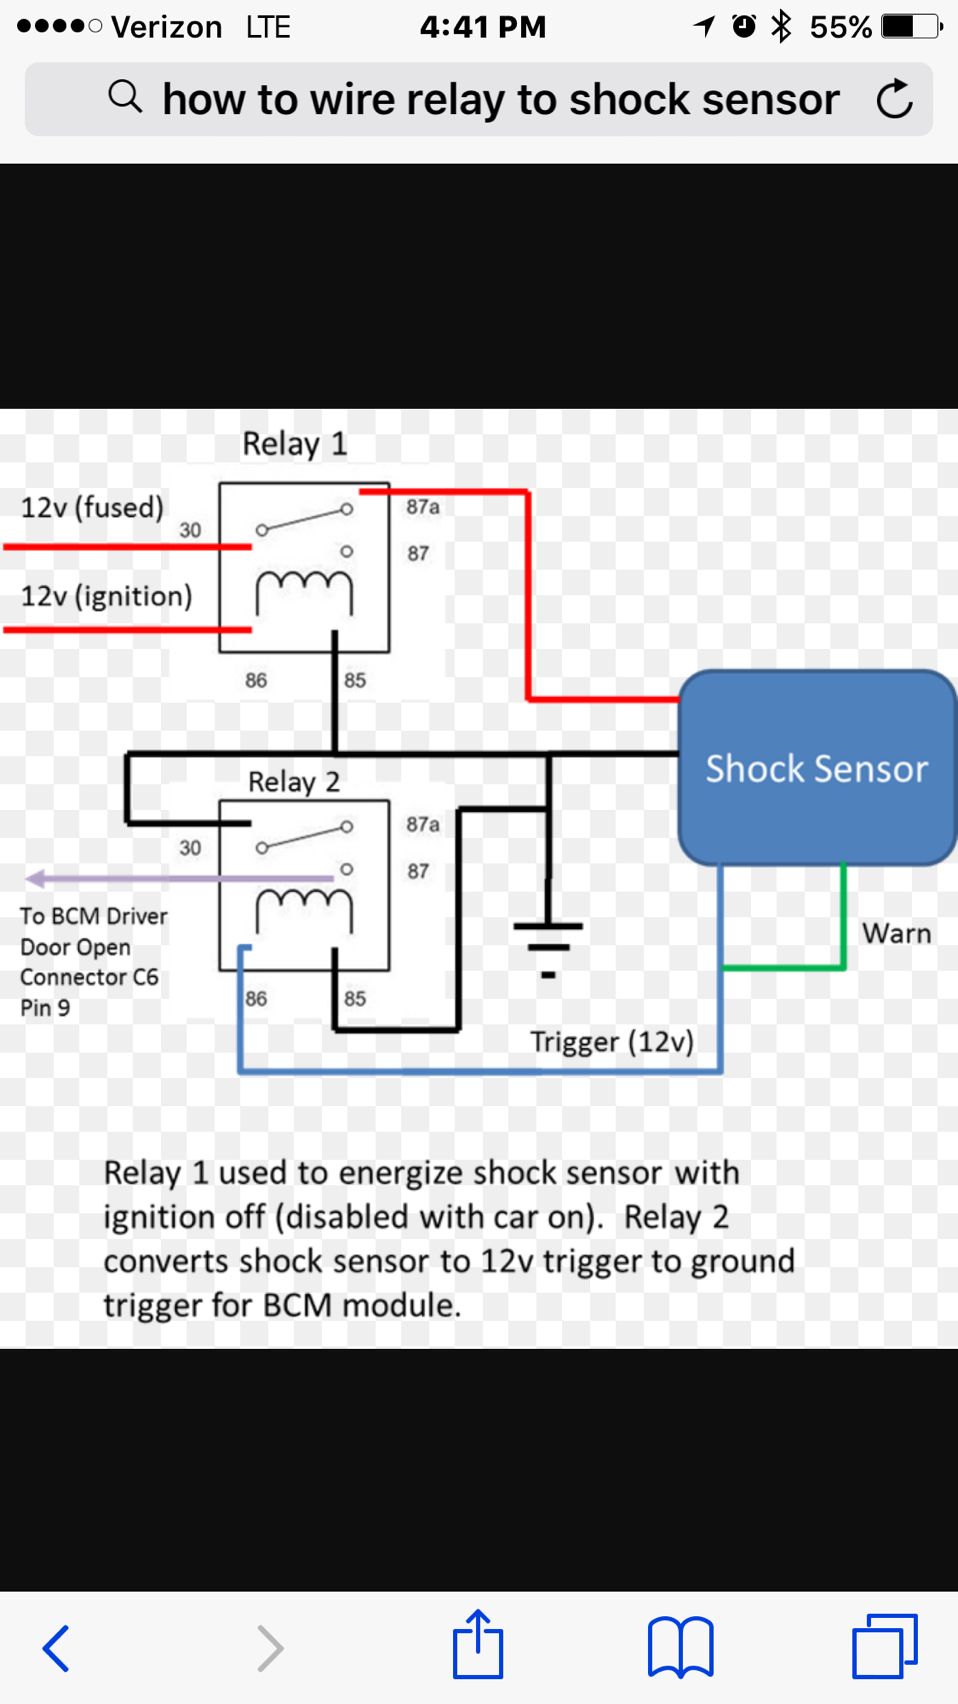 ¿Cómo se instala un sensor de choque en una alarma de fábrica?